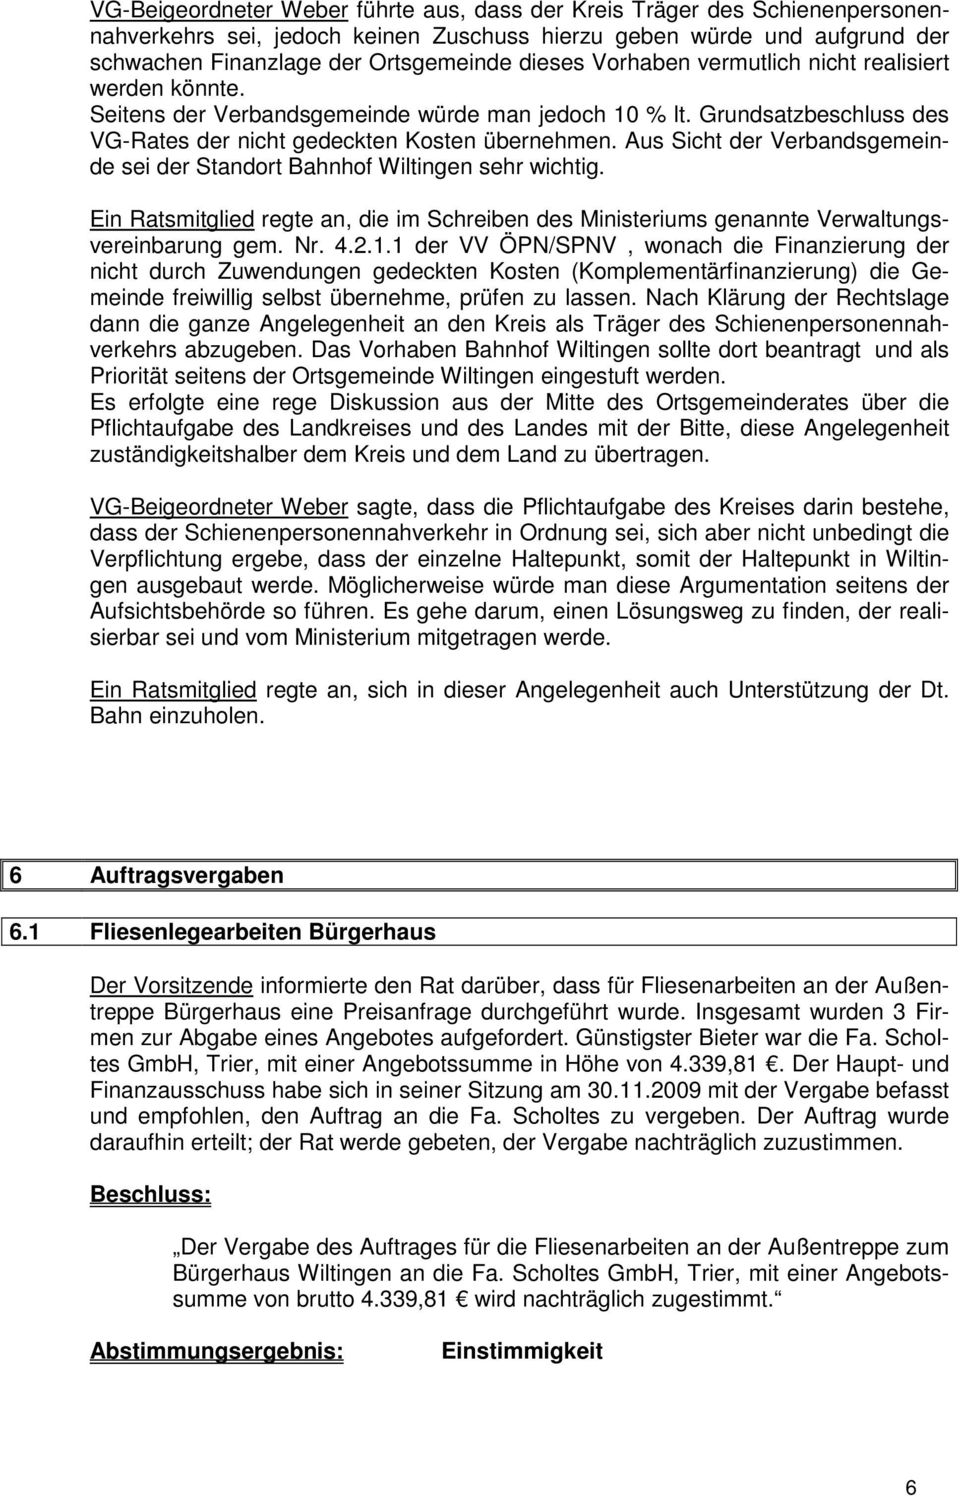 Aus Sicht der Verbandsgemeinde sei der Standort Bahnhof Wiltingen sehr wichtig. Ein Ratsmitglied regte an, die im Schreiben des Ministeriums genannte Verwaltungsvereinbarung gem. Nr. 4.2.1.